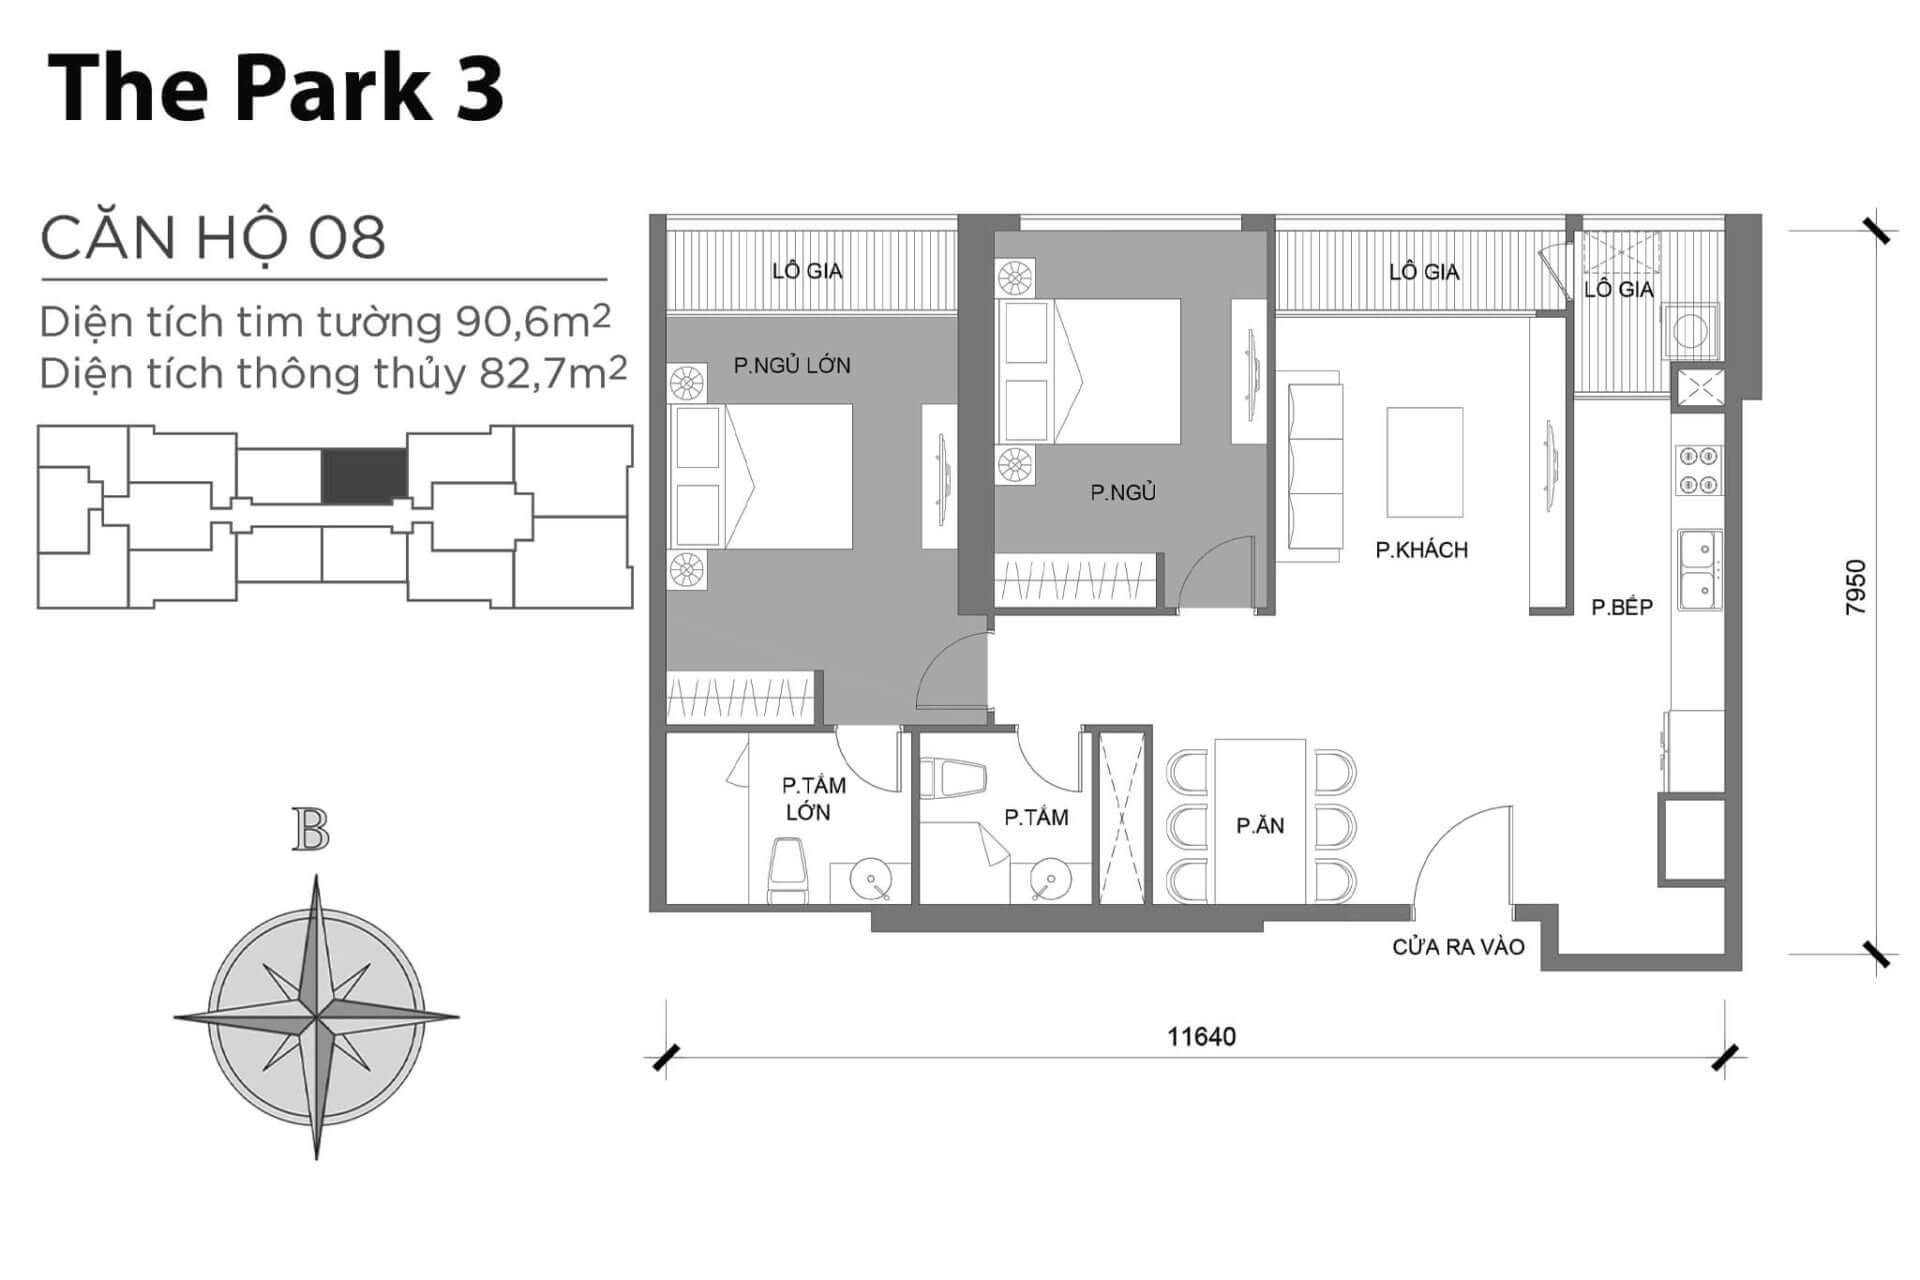 mặt bằng layout căn hộ số 08 Park 3 Vinhomes Central Park